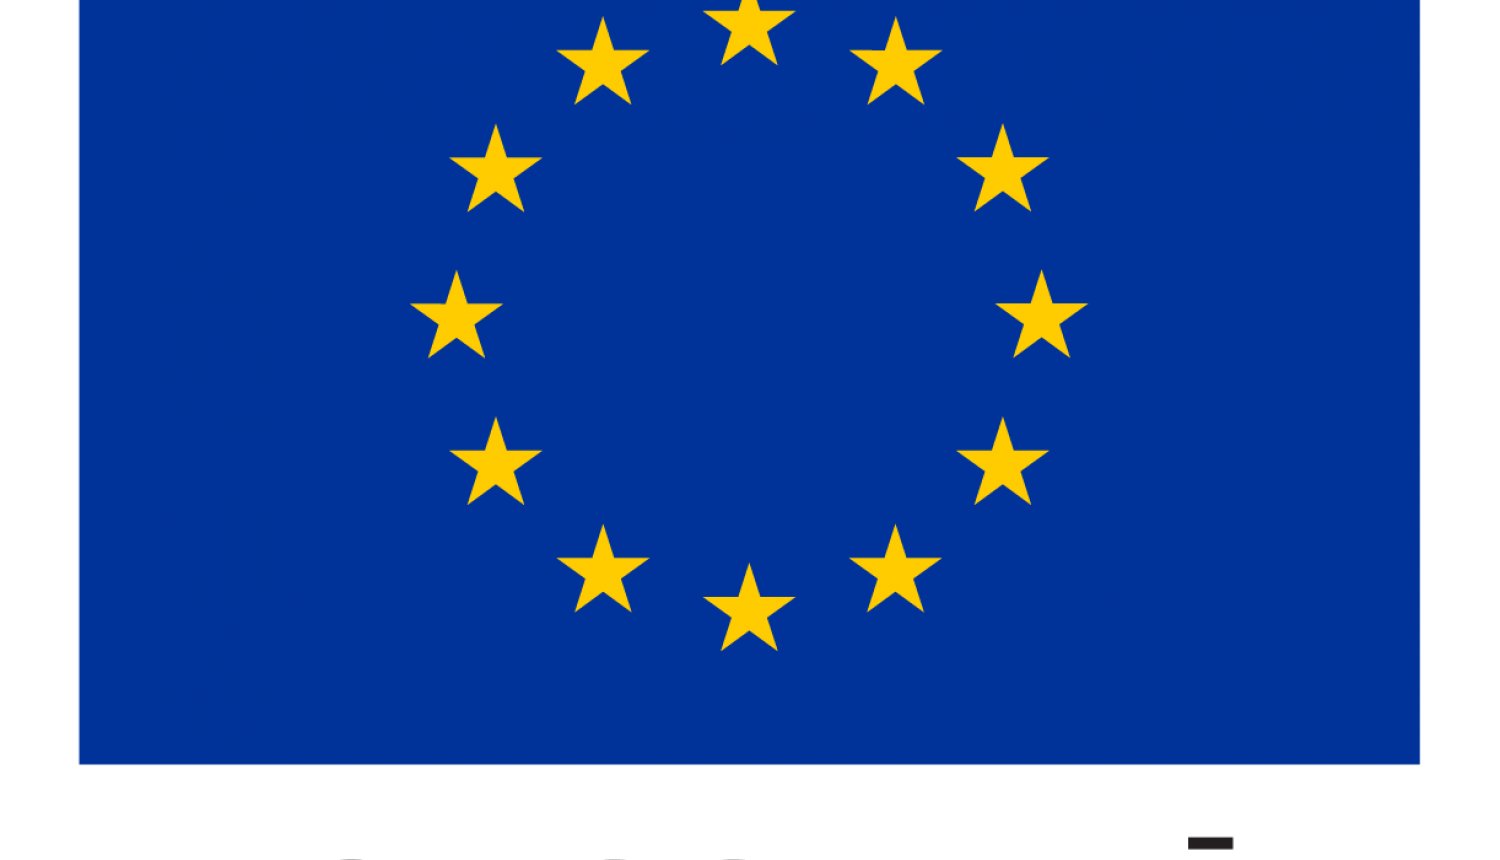 Eiropas Savienības karogs - zils taisnstūris uz kura aplī izvietotas divpadsmit dzeltenas zvaigznes. Zem karoga teksts - Eiropas Savienība